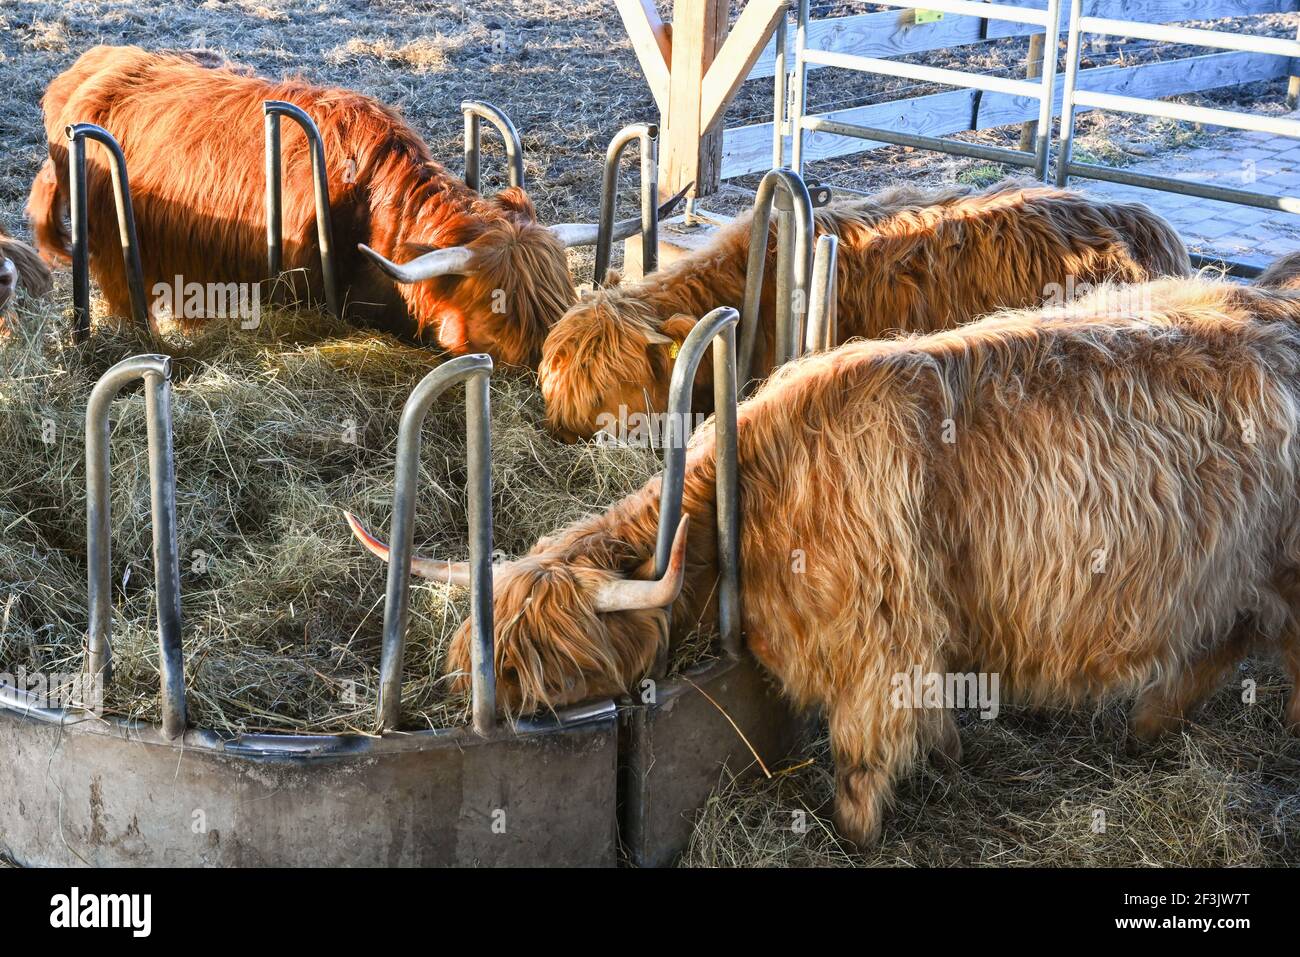 Vaches écossaises hautes terres en cours d'alimentation. Baden. Baden Wuerttemberg, Allemagne, Europe Banque D'Images